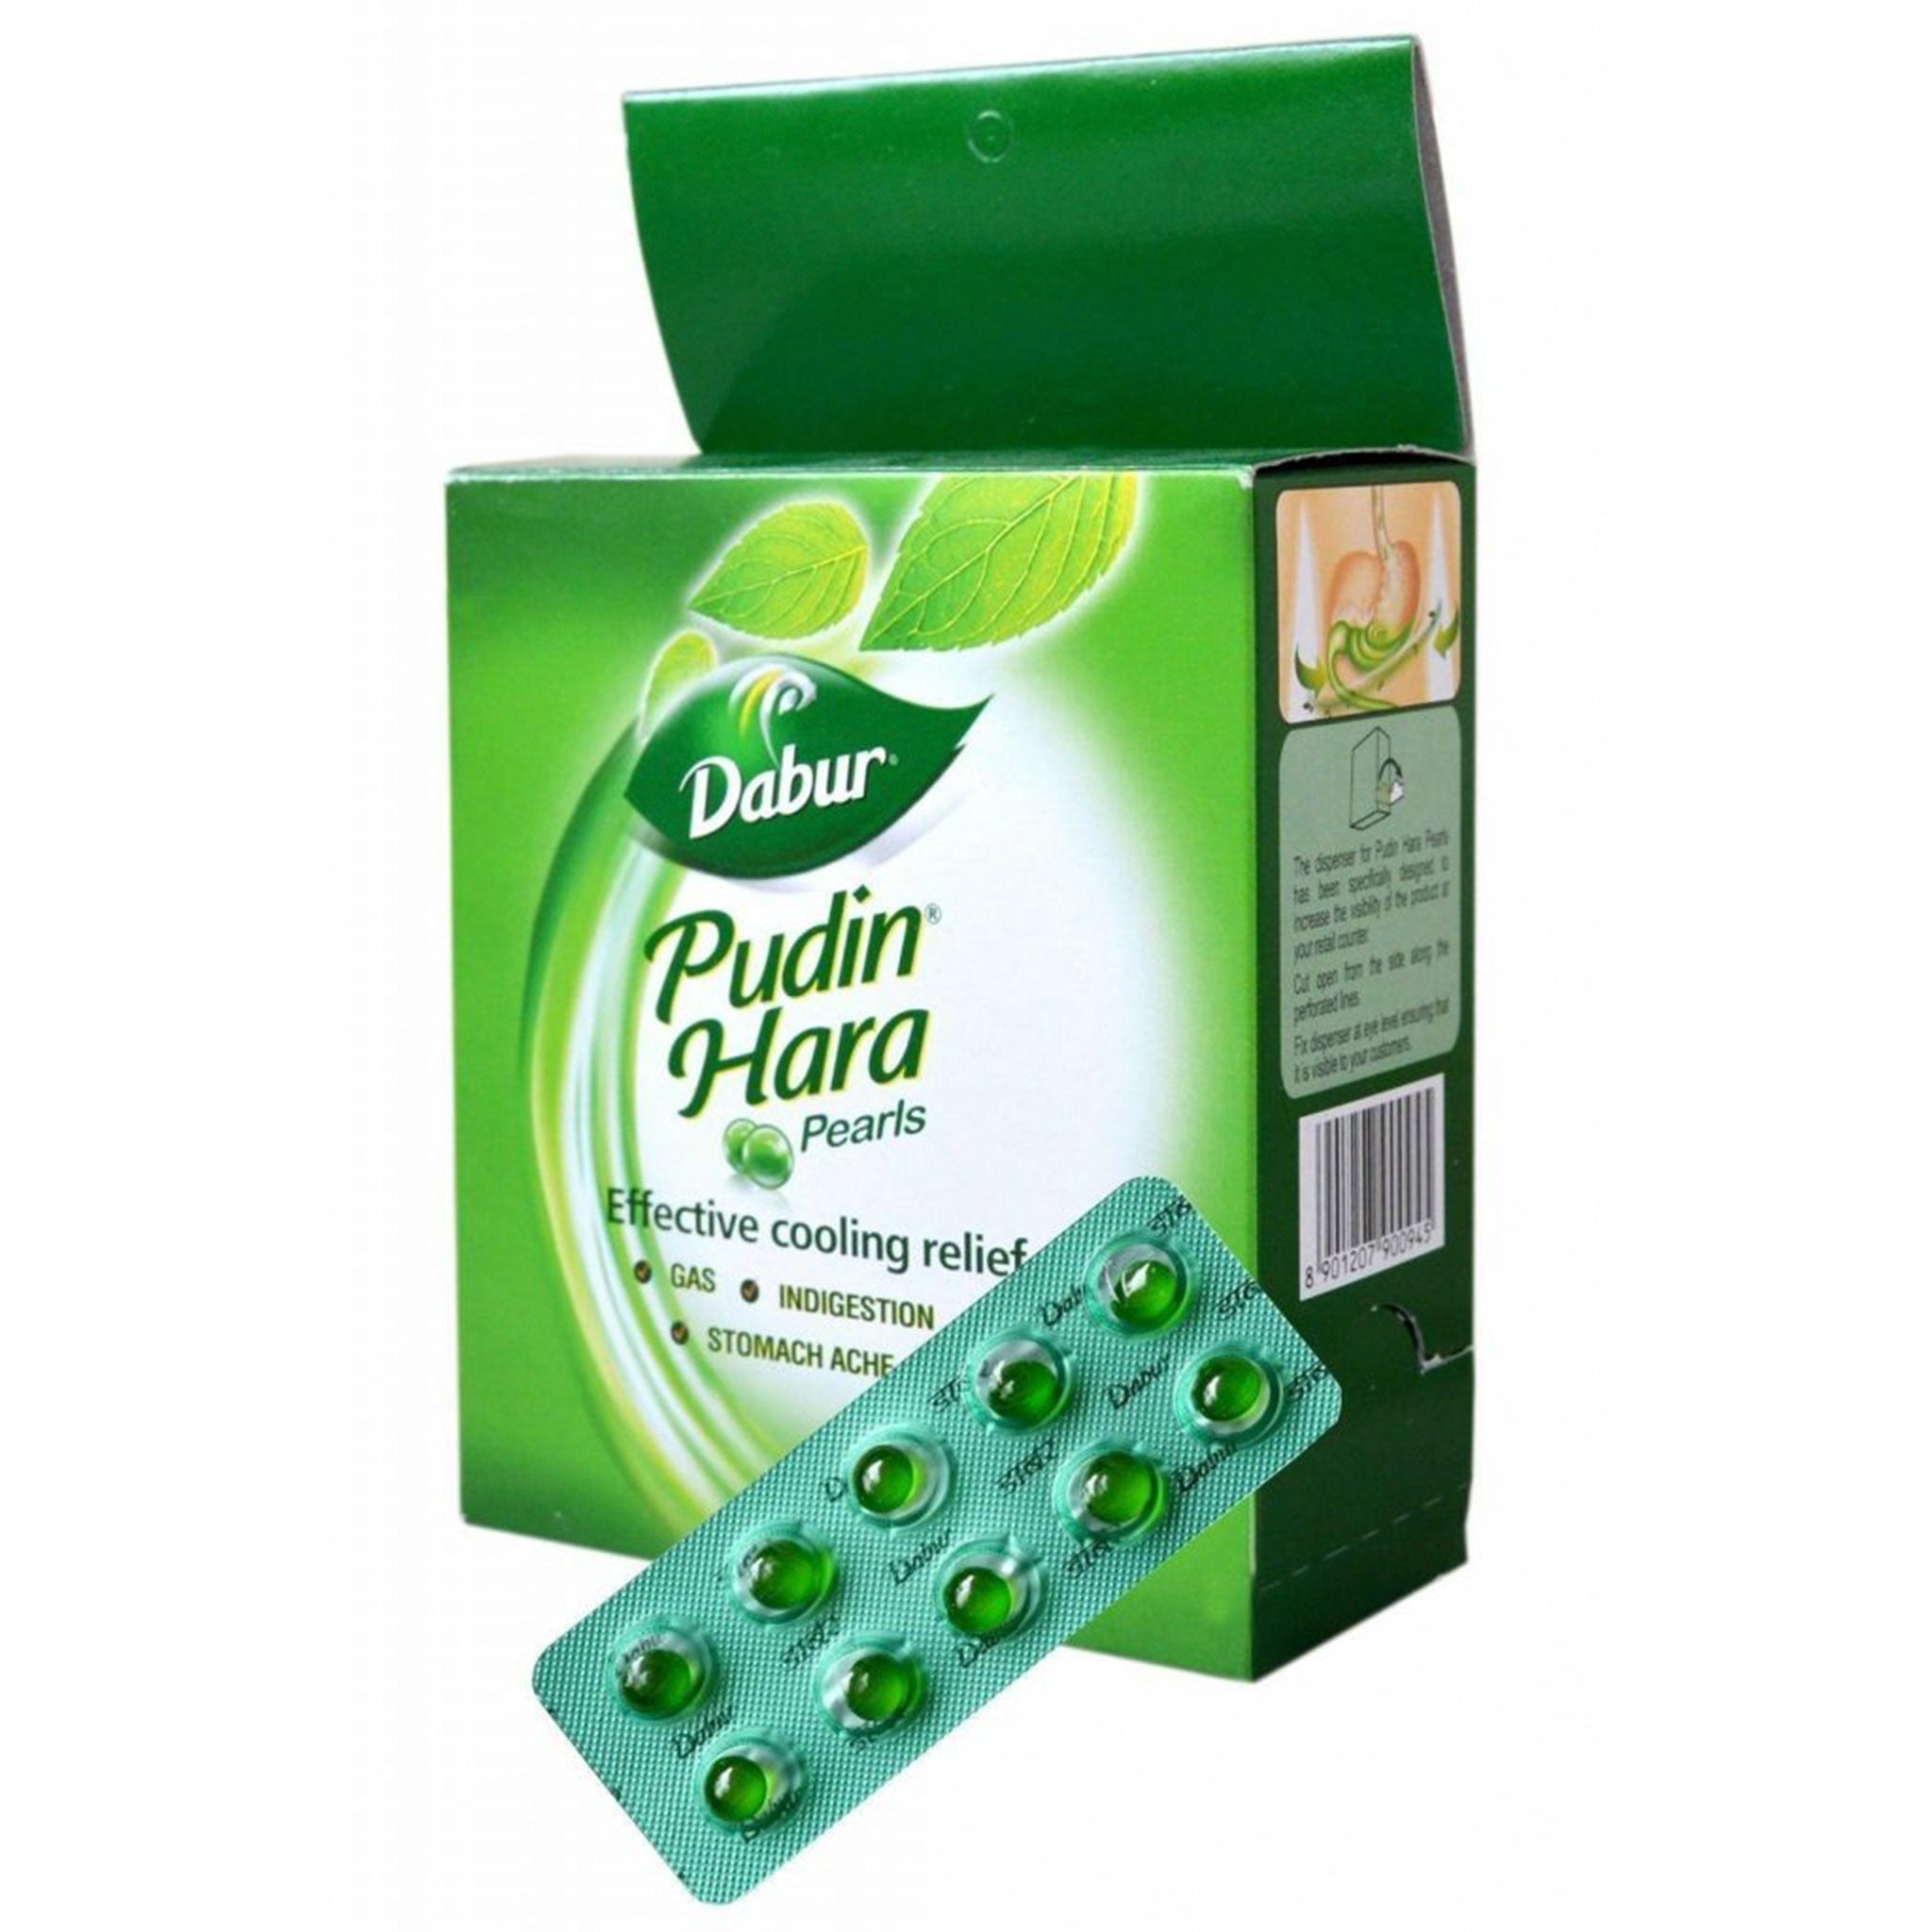 Dabur Pudin Hara Pearls 10 capsule Value Pack of 12 